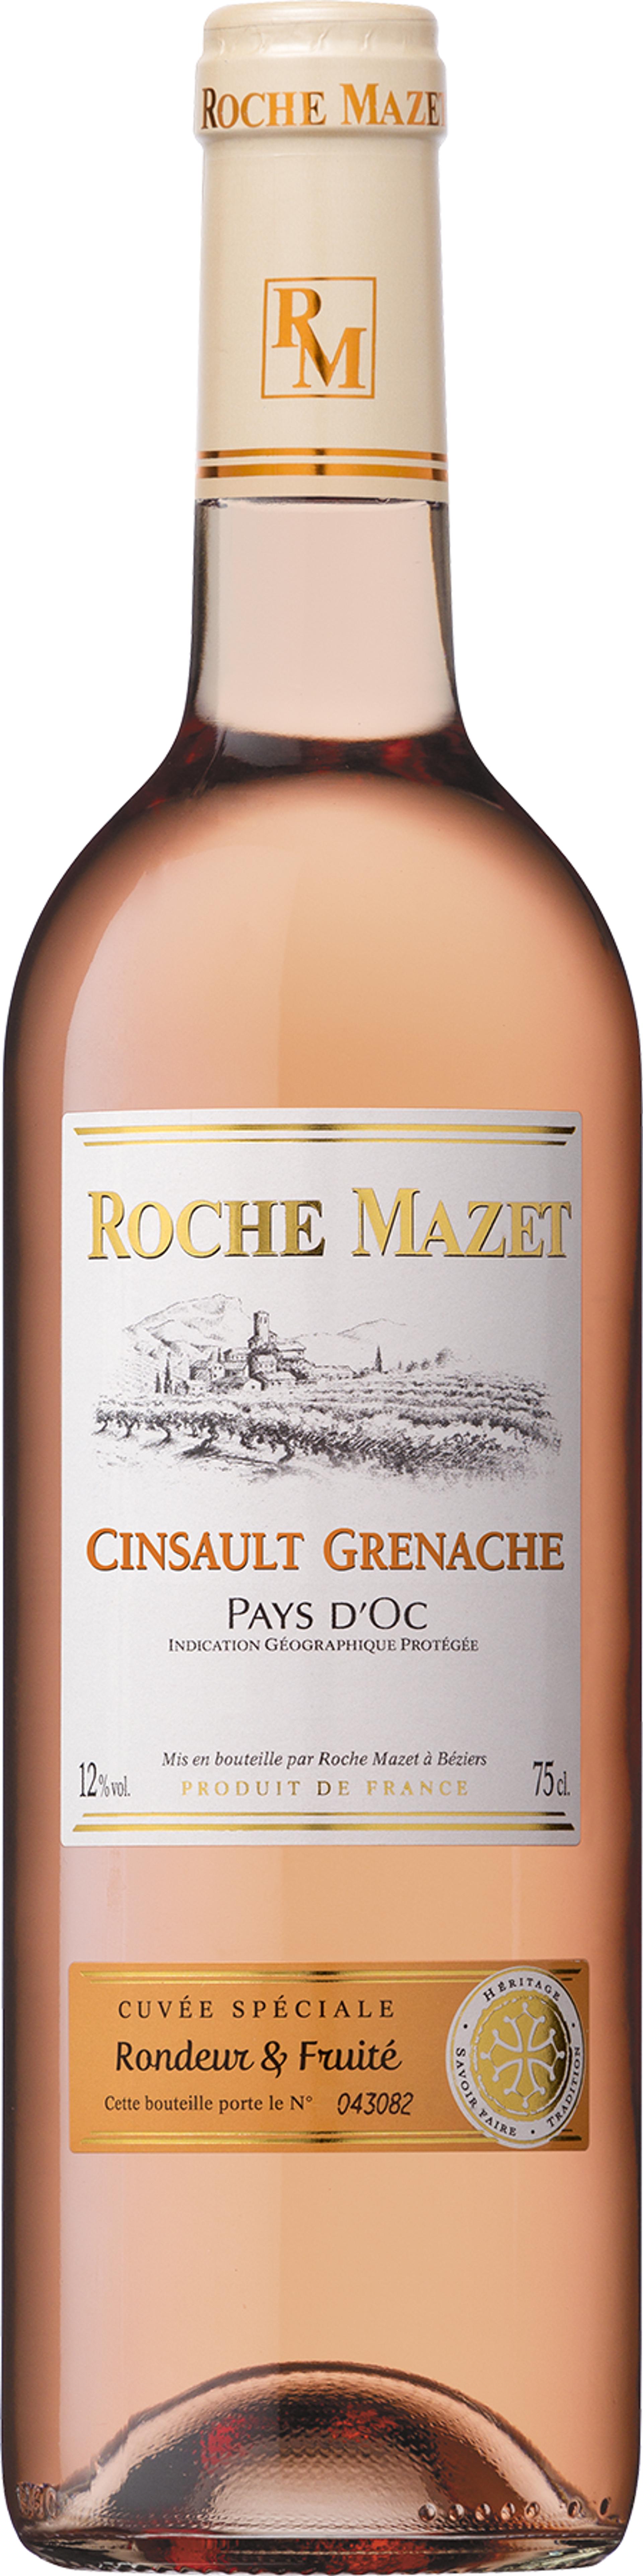 Roche Mazet Cinsault Grenache